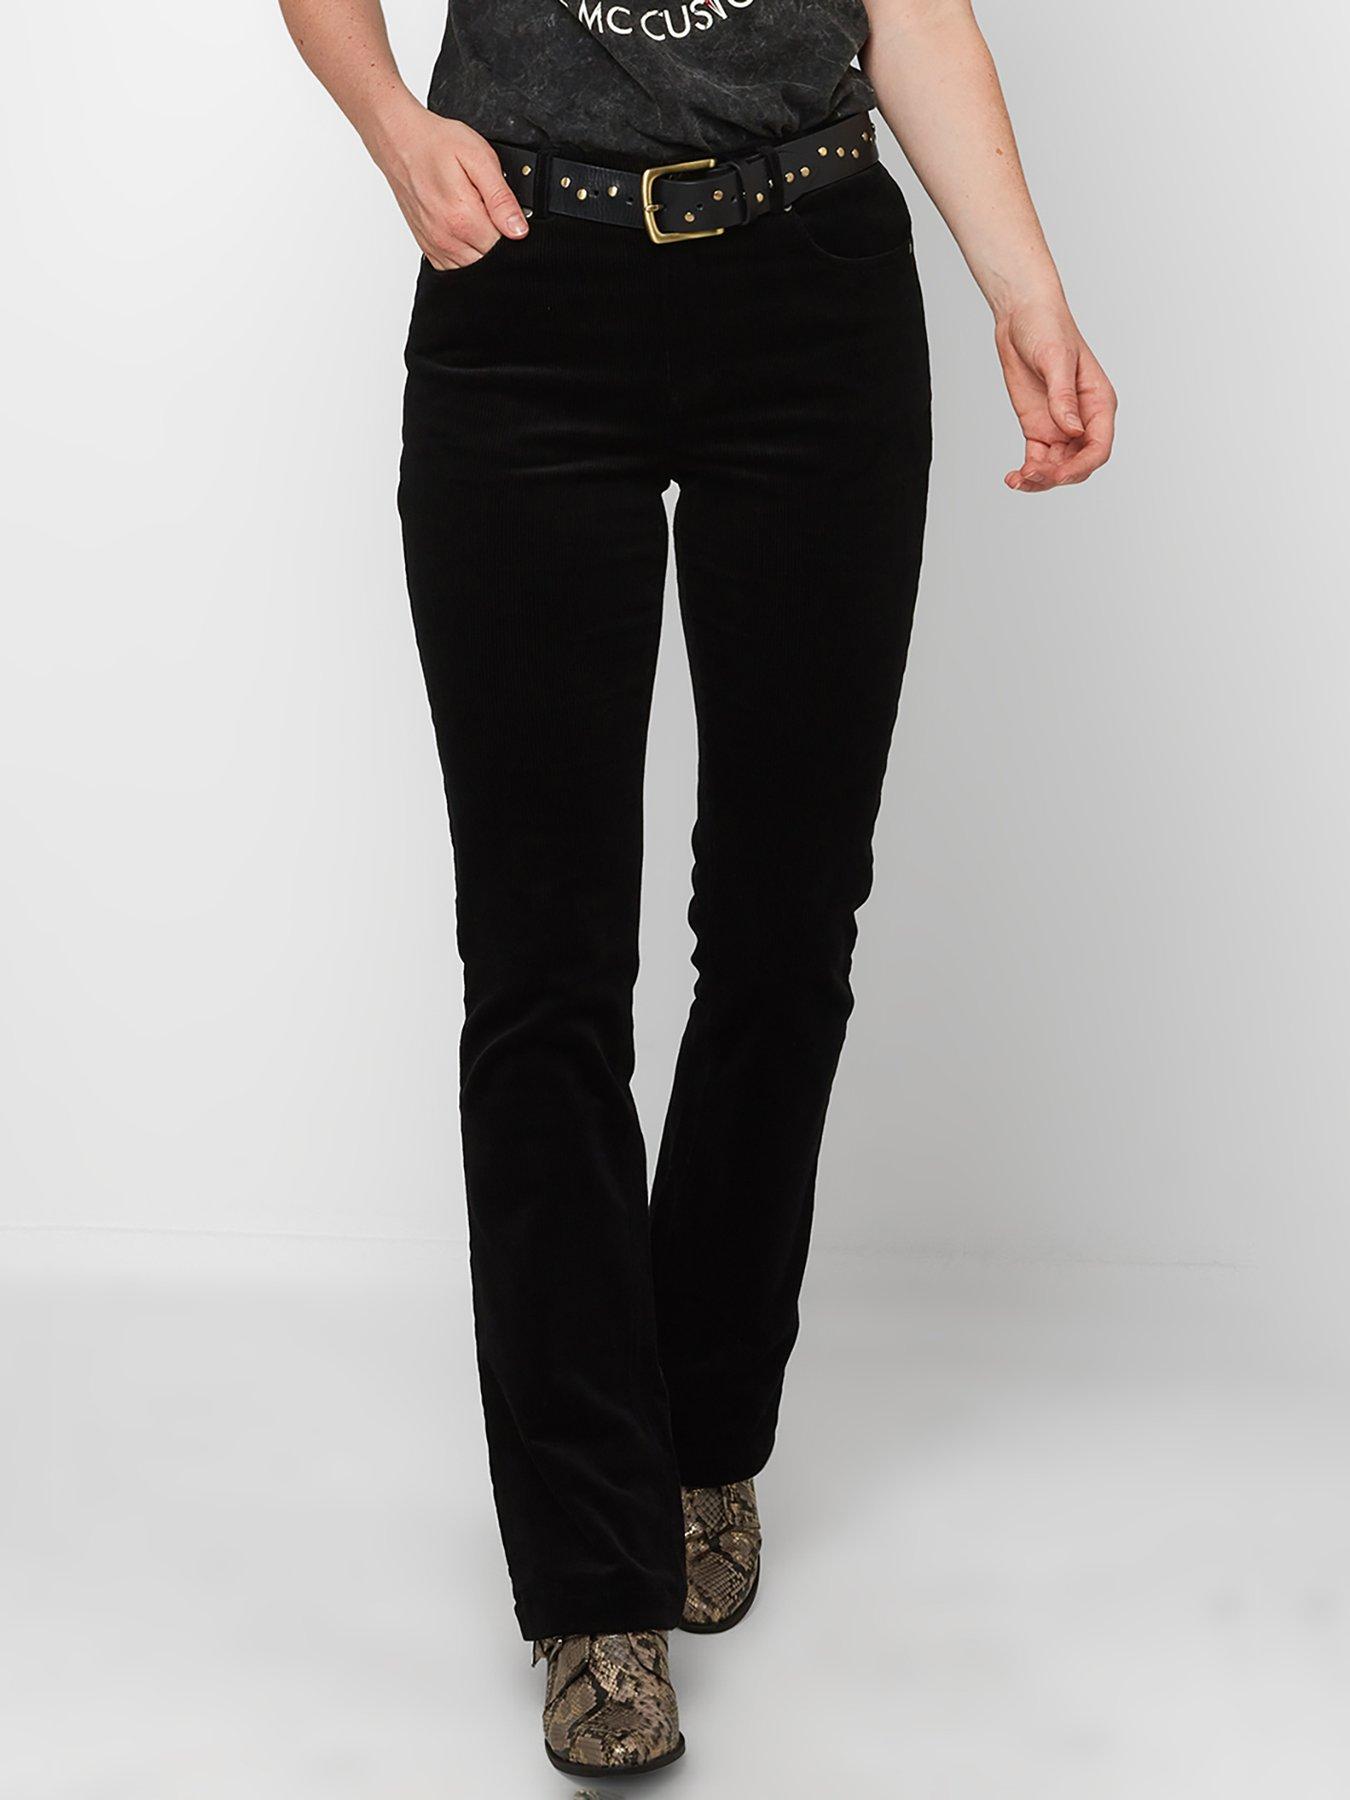 Design by Olivia Women's Plaid Millennium Trouser Bootcut Pants Slacks  Charcoal Plaid XS at Amazon Women's Clothing store